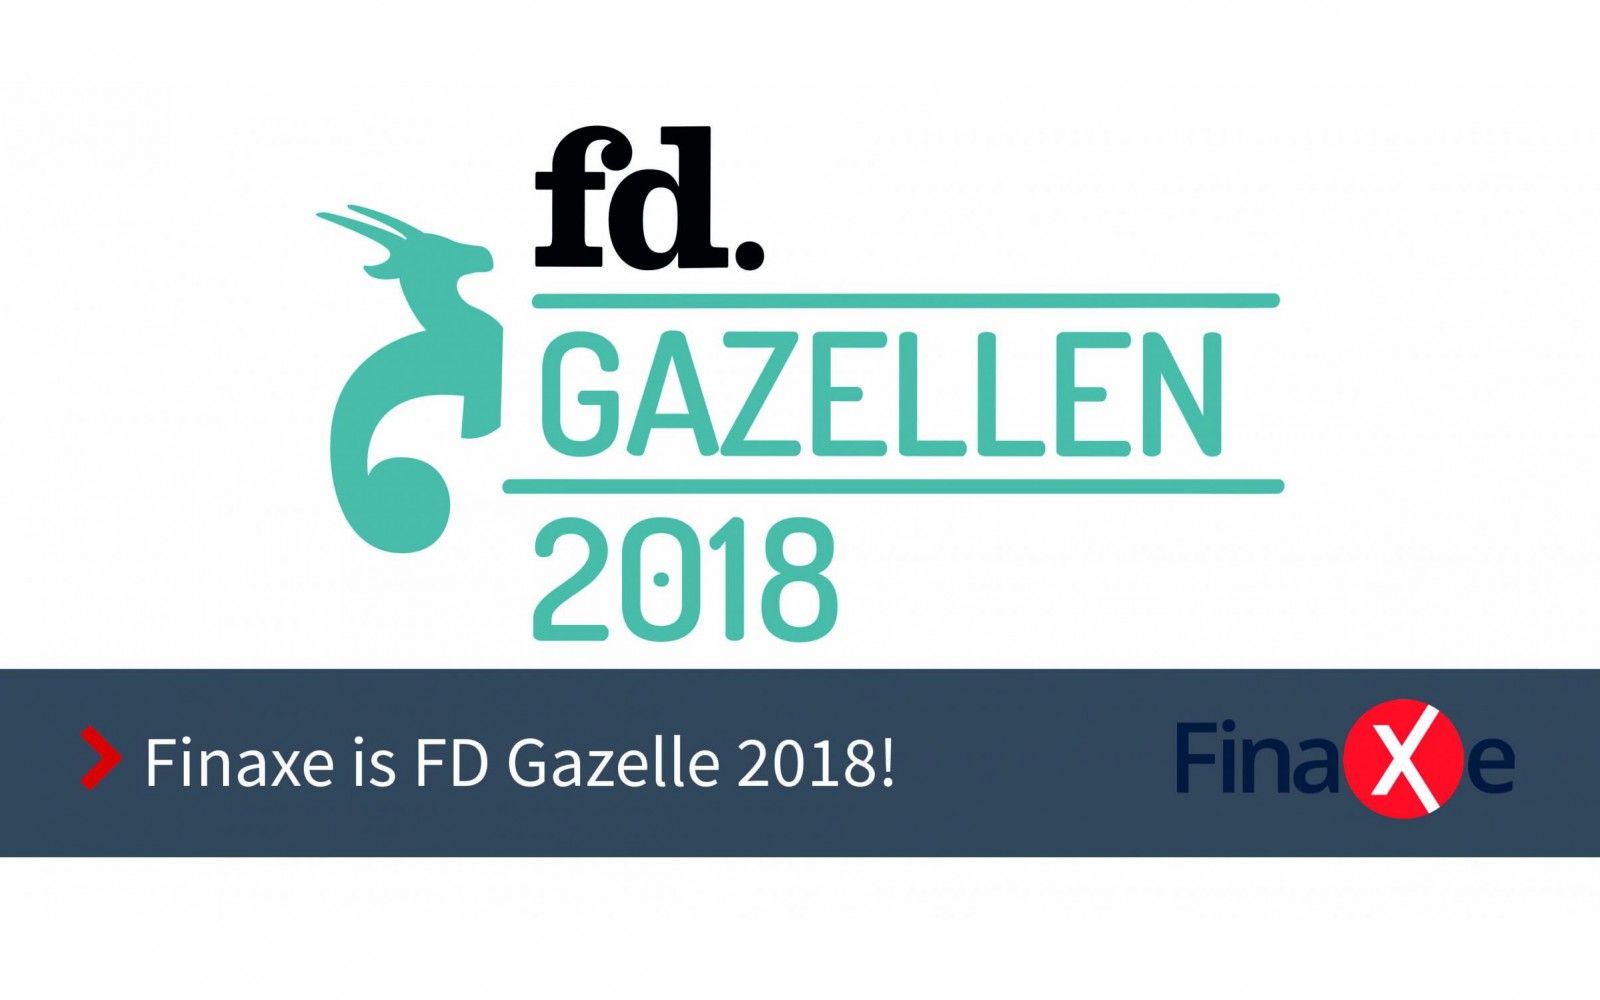 Finanxe is FD Gazelle 2018